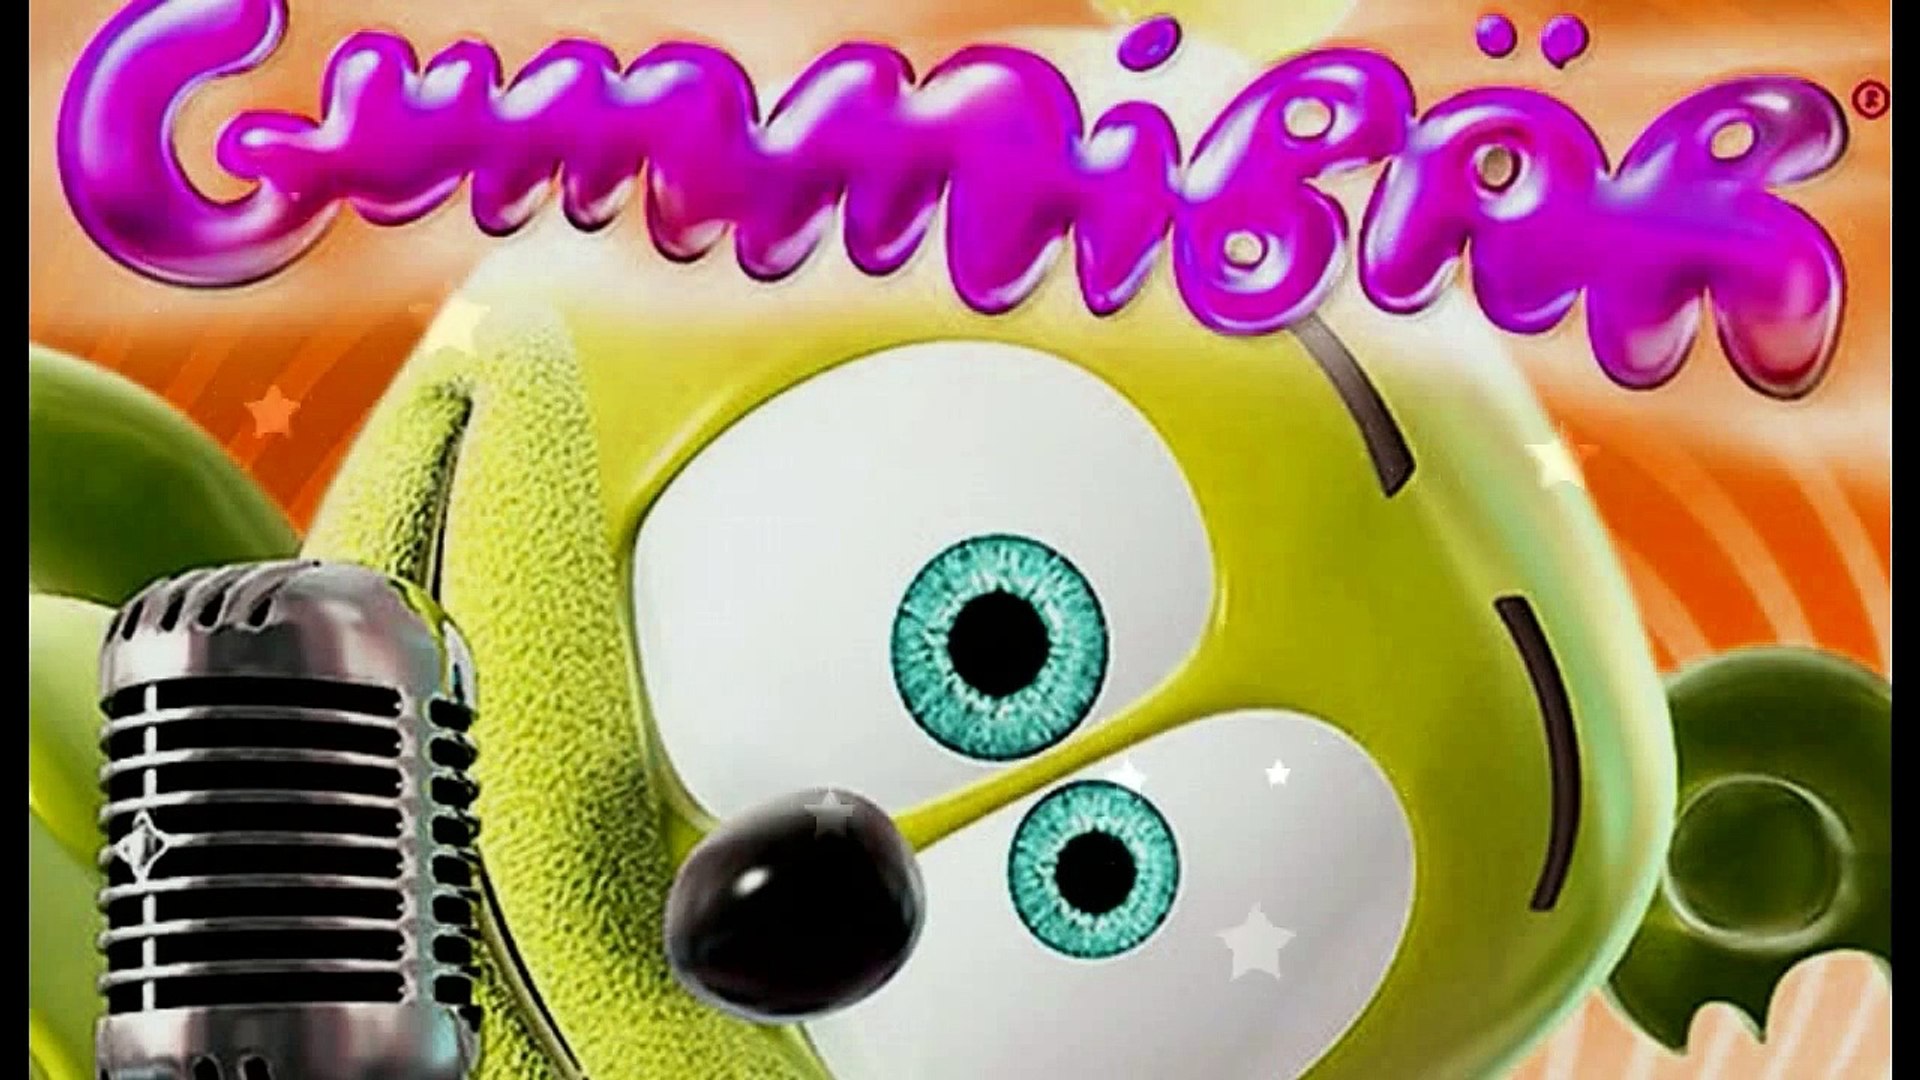 The Gummy Bear Song With Lyrics Gummibär The Gummy Bear - Dailymotion Video